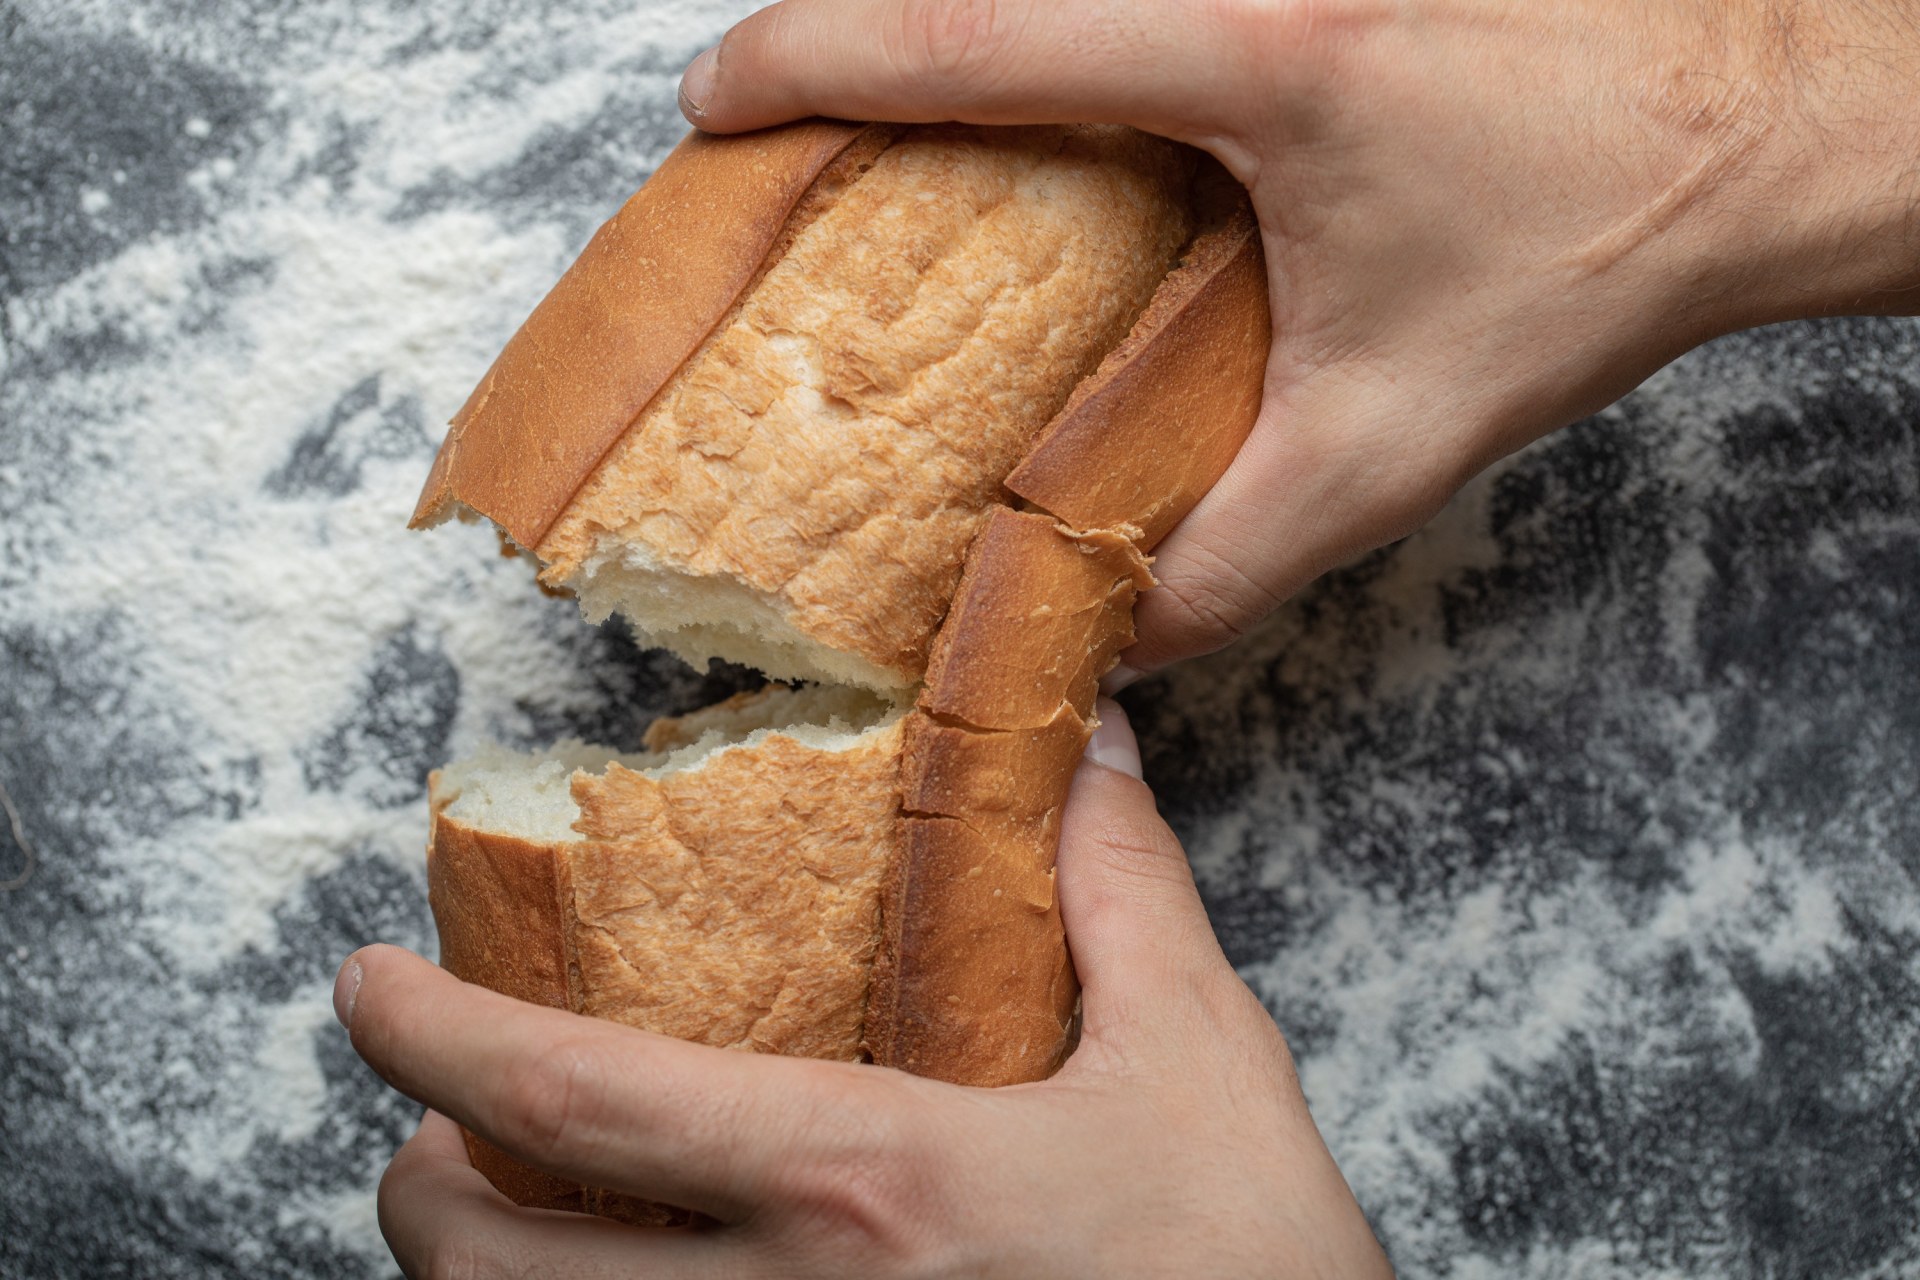 Ekmeğin içinde katkı maddesi olmadığını nasıl anlarız?